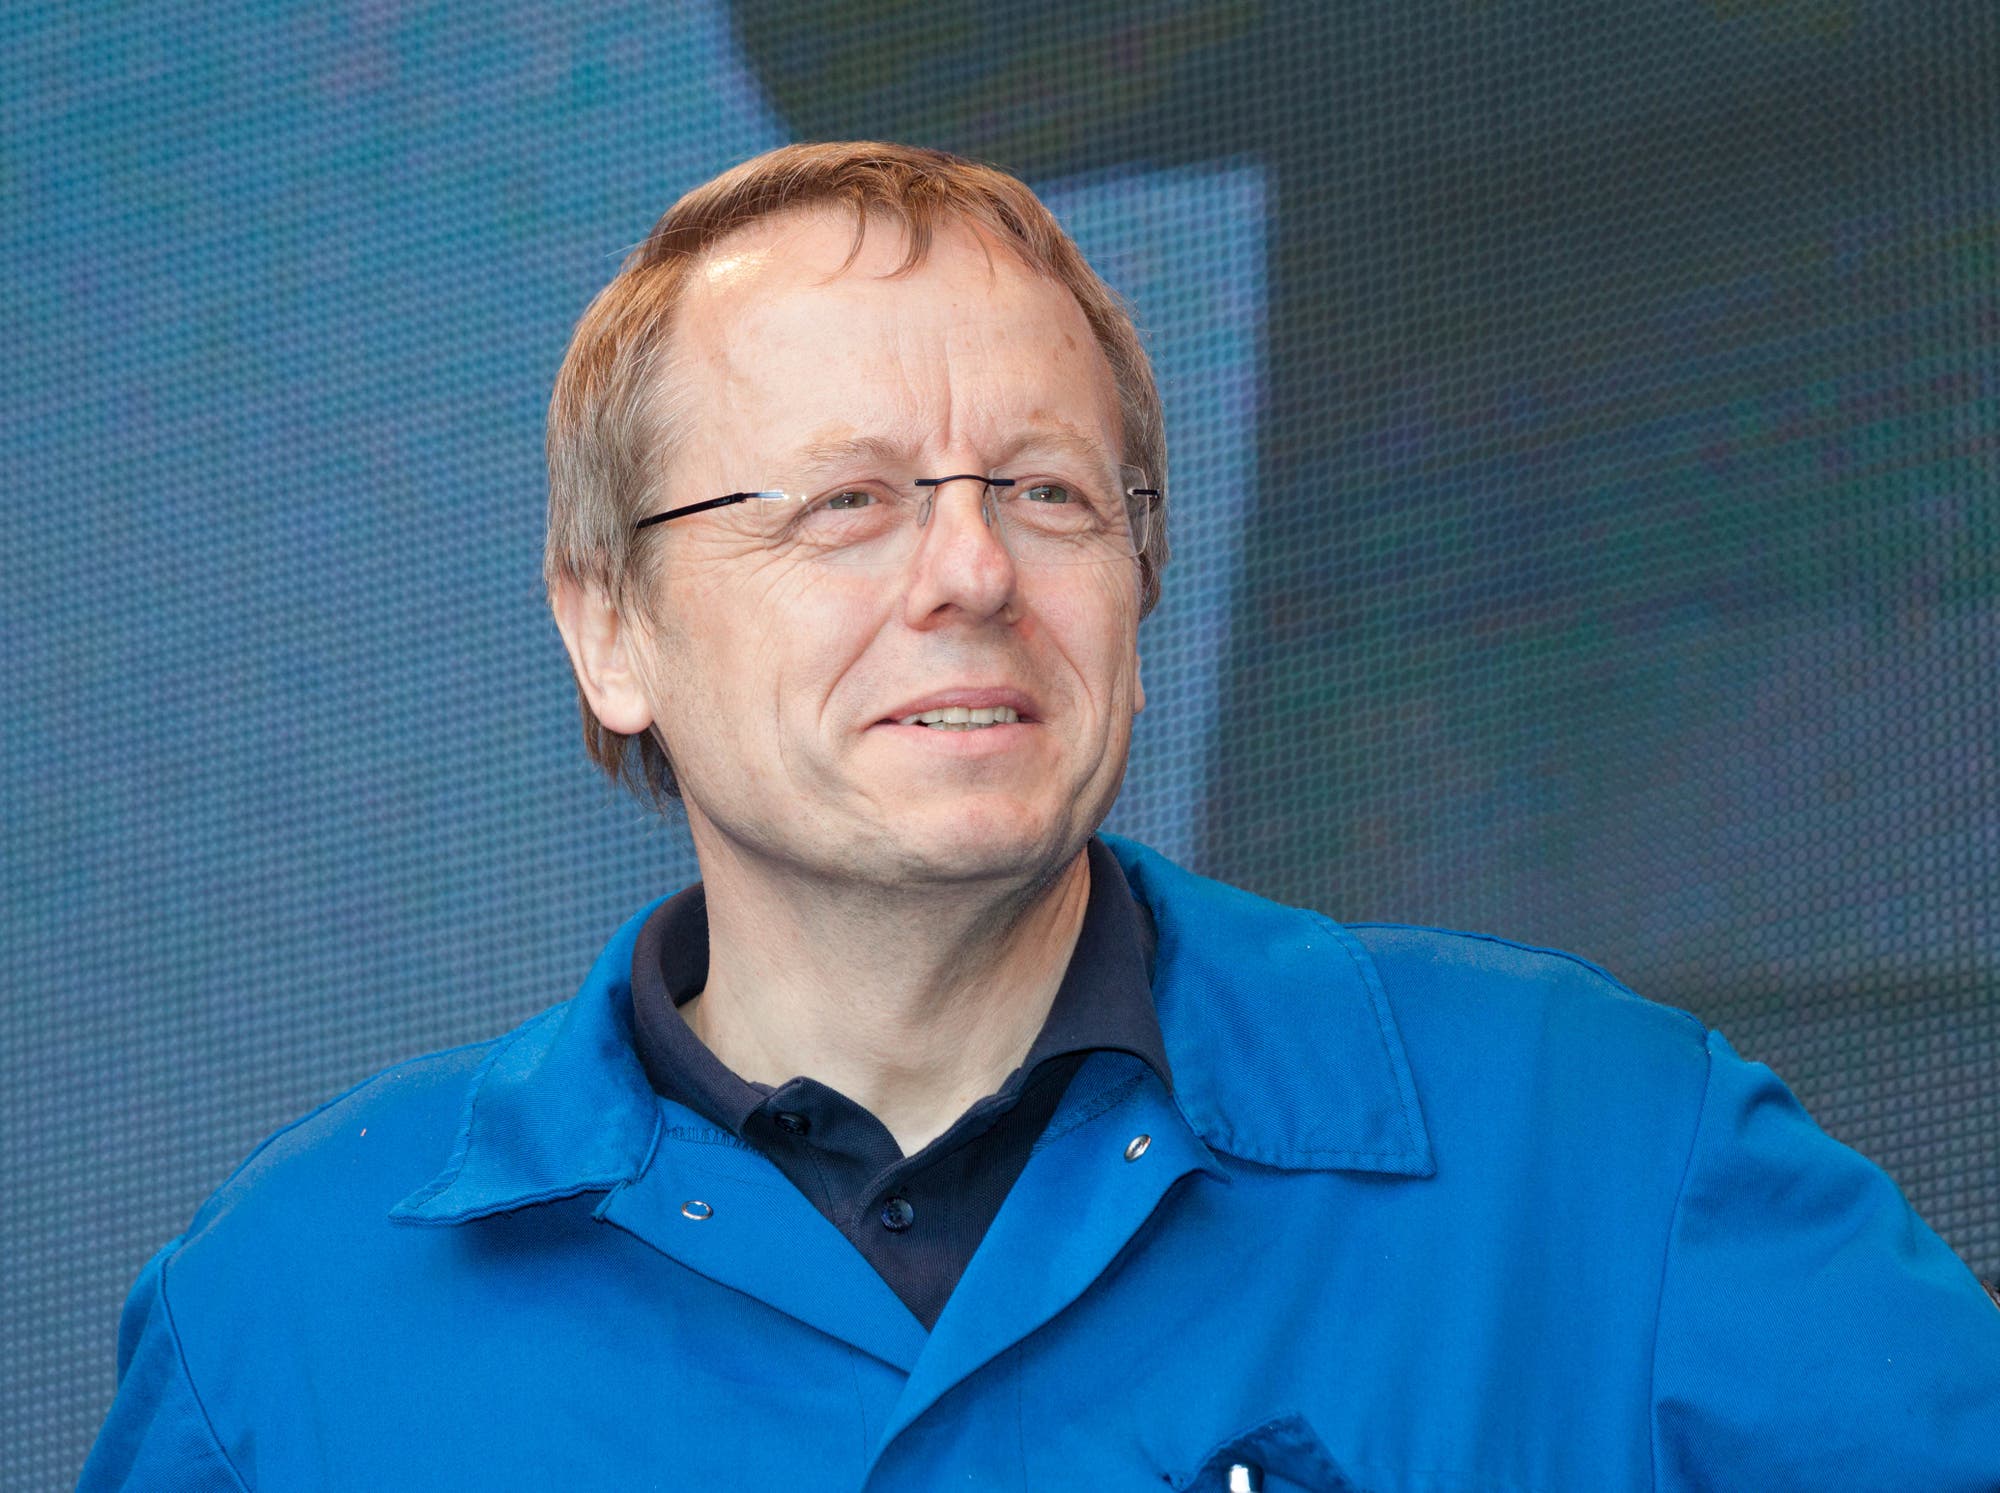 ist ein deutscher Bauingenieur, Hochschullehrer und ehemaliger Universitätspräsident der TU Darmstadt. Seit dem 1. März 2007 ist er Vorstandsvorsitzender des Deutschen Zentrums für Luft- und Raumfahrt (DLR). Im Jahr 2015 wird er der Nachfolger von Jean-Jacques Dordain als Generaldirektor bei der ESA.